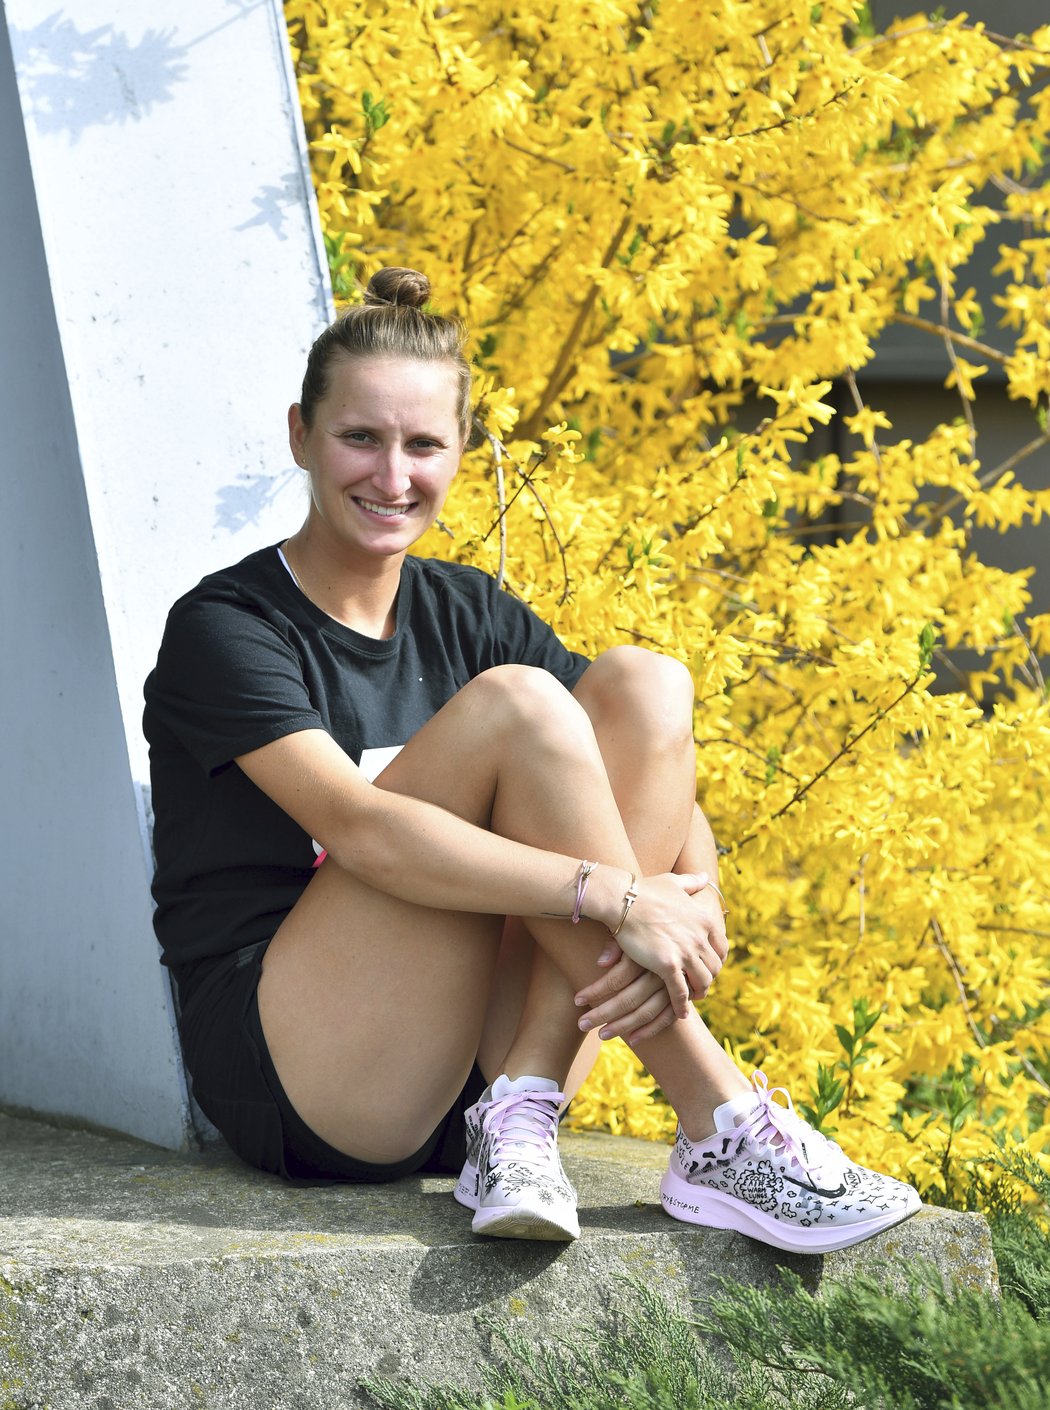 Česká tenistka Markéta Vondroušová